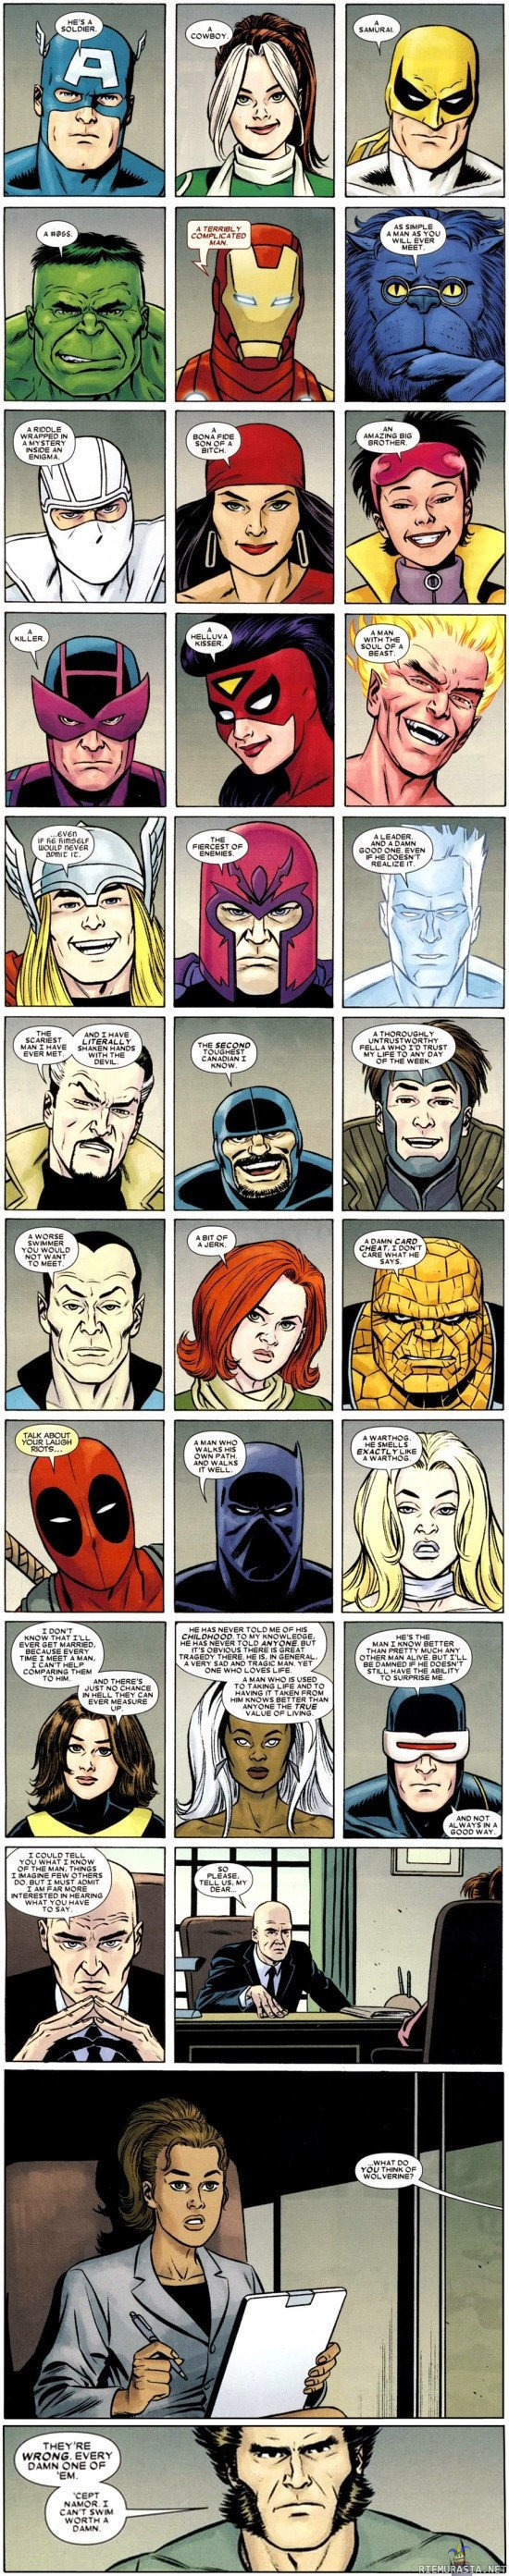 Sankarit kuvailevat toveriaan - Marvel sankarit kuvailevat tunnettua hahmoa